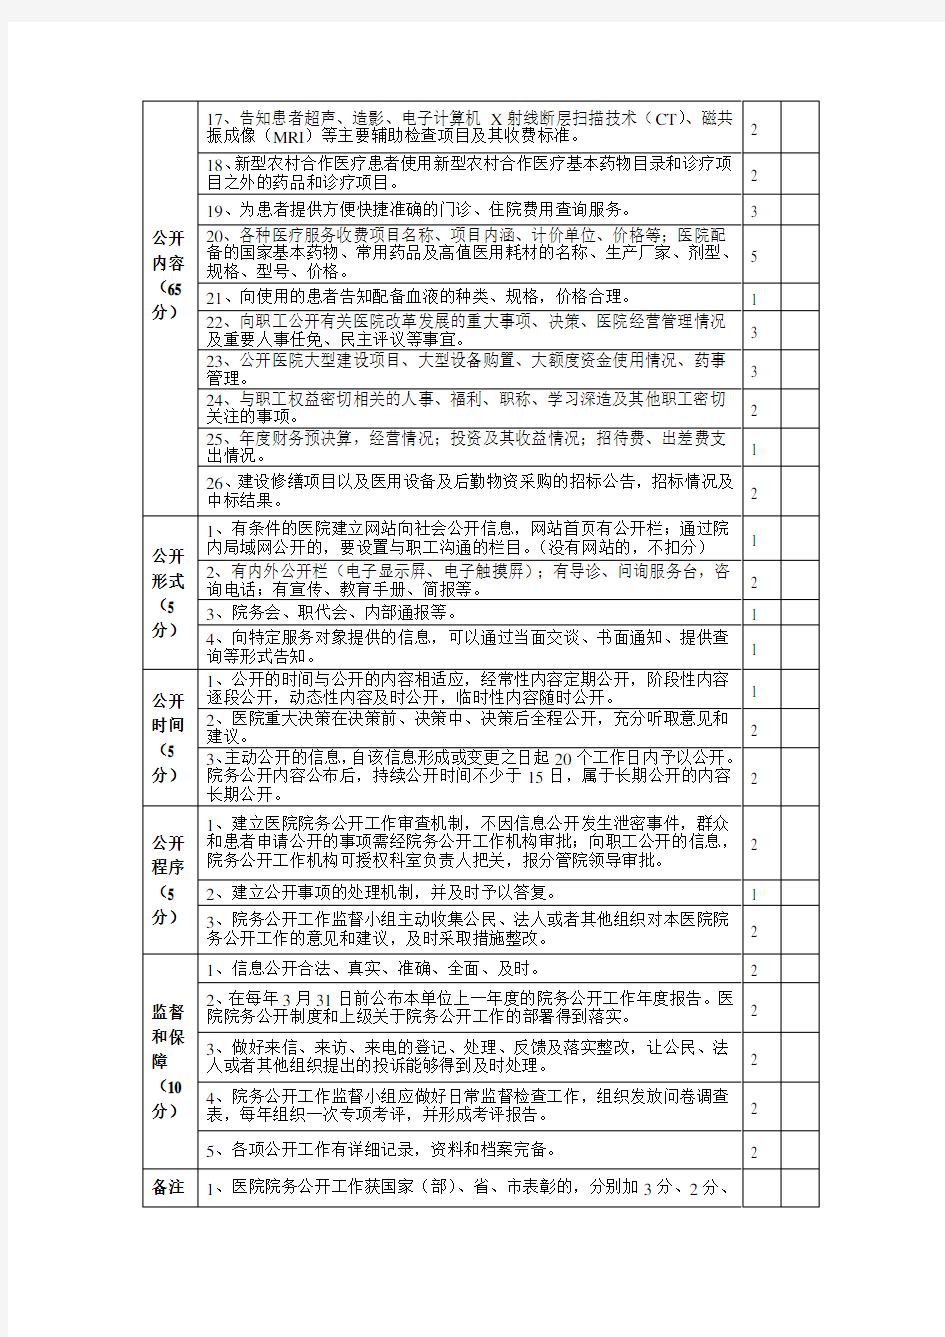 福建省医院院务公开评估考核表(1)